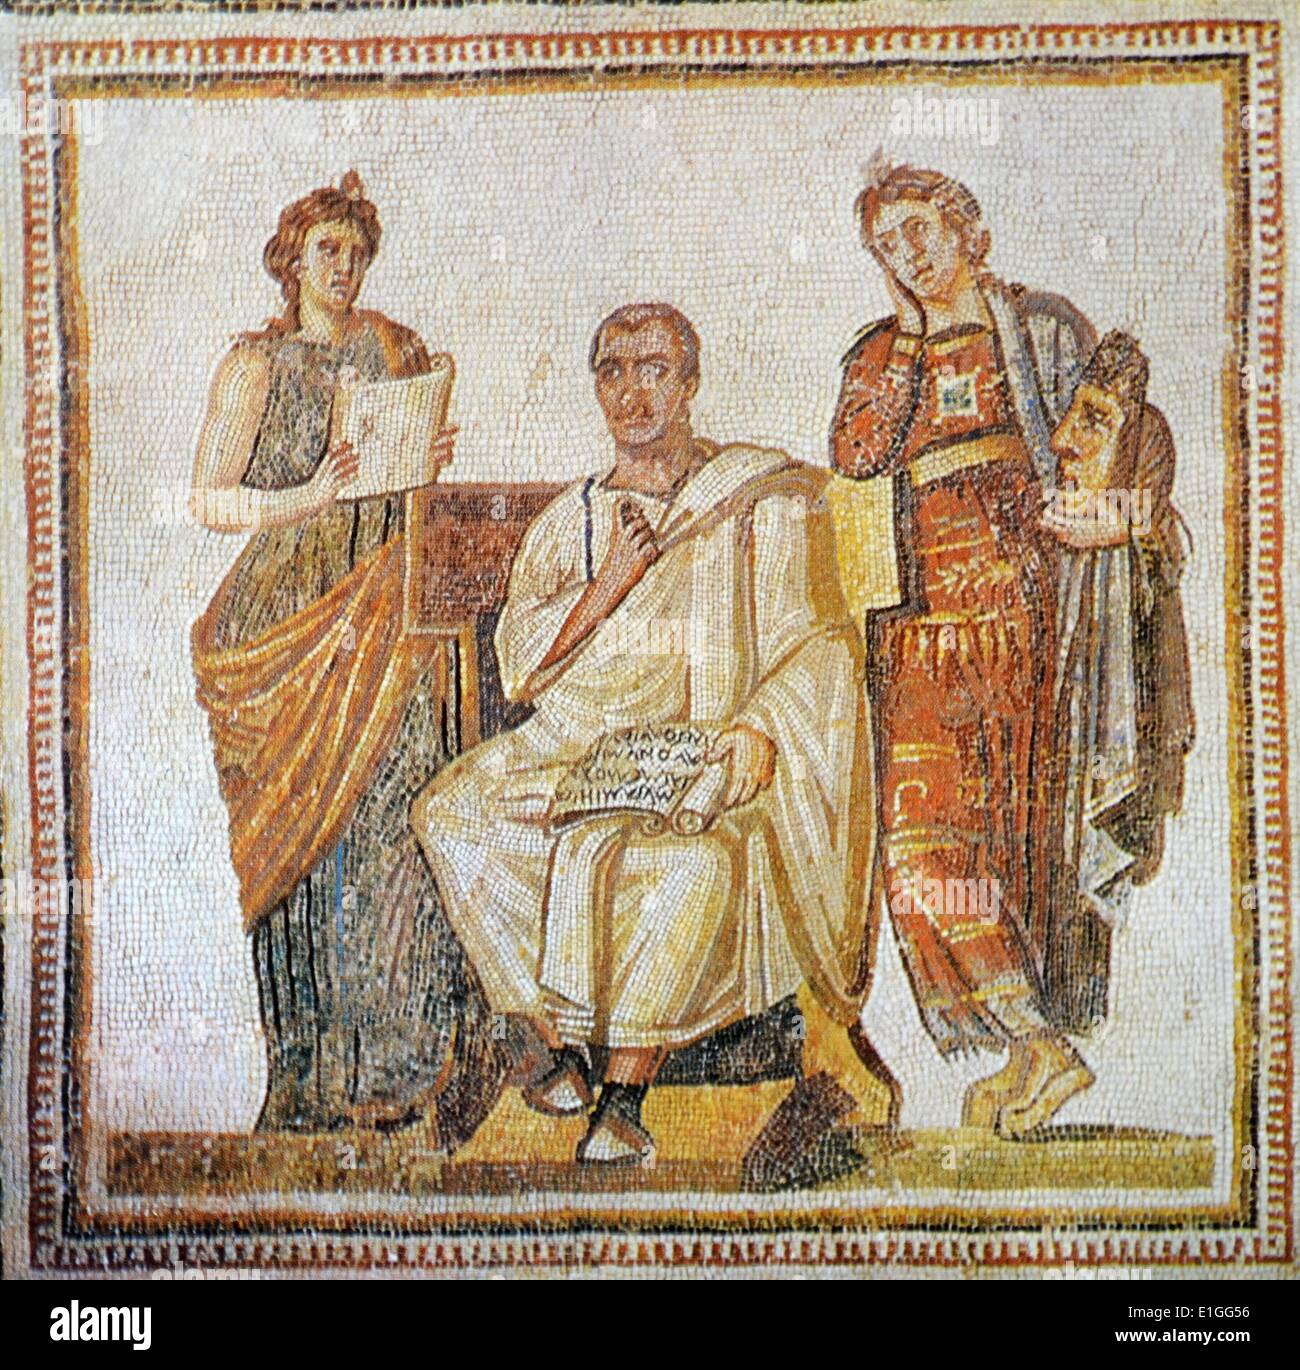 Römisches Mosaik von Vergil (70 -19 BC BC) antike römische Dichter der augusteischen Zeit. Vom 1. Jahrhundert v. Chr. Stockfoto